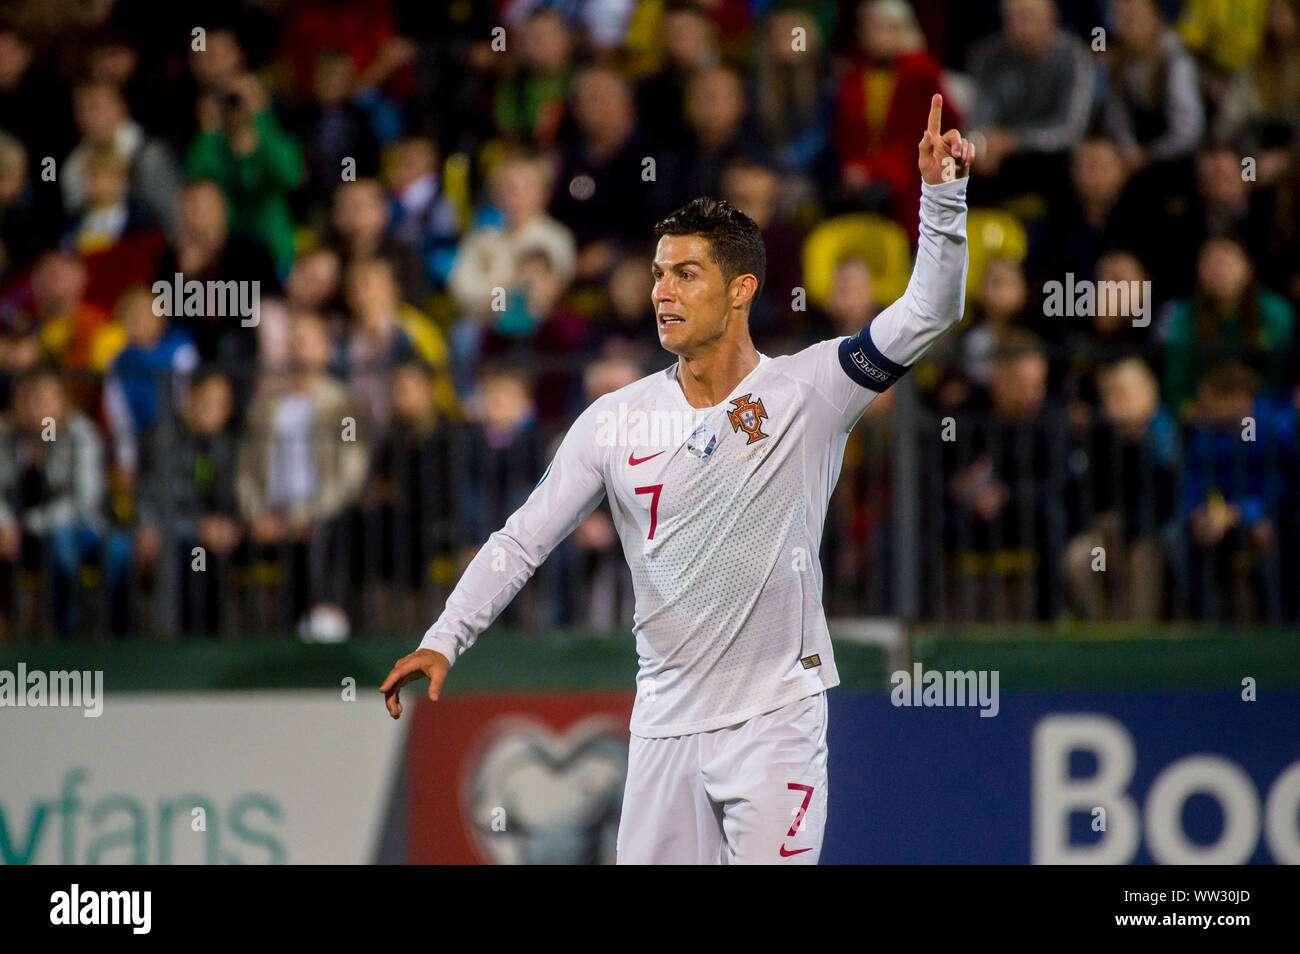 Lituania, Vilnius - 10 de septiembre de 2019: Cristiano Ronaldo durante un calificador de la UEFA EURO 2020 entre Lituania y Portugal en el LFF Arena. Foto de stock